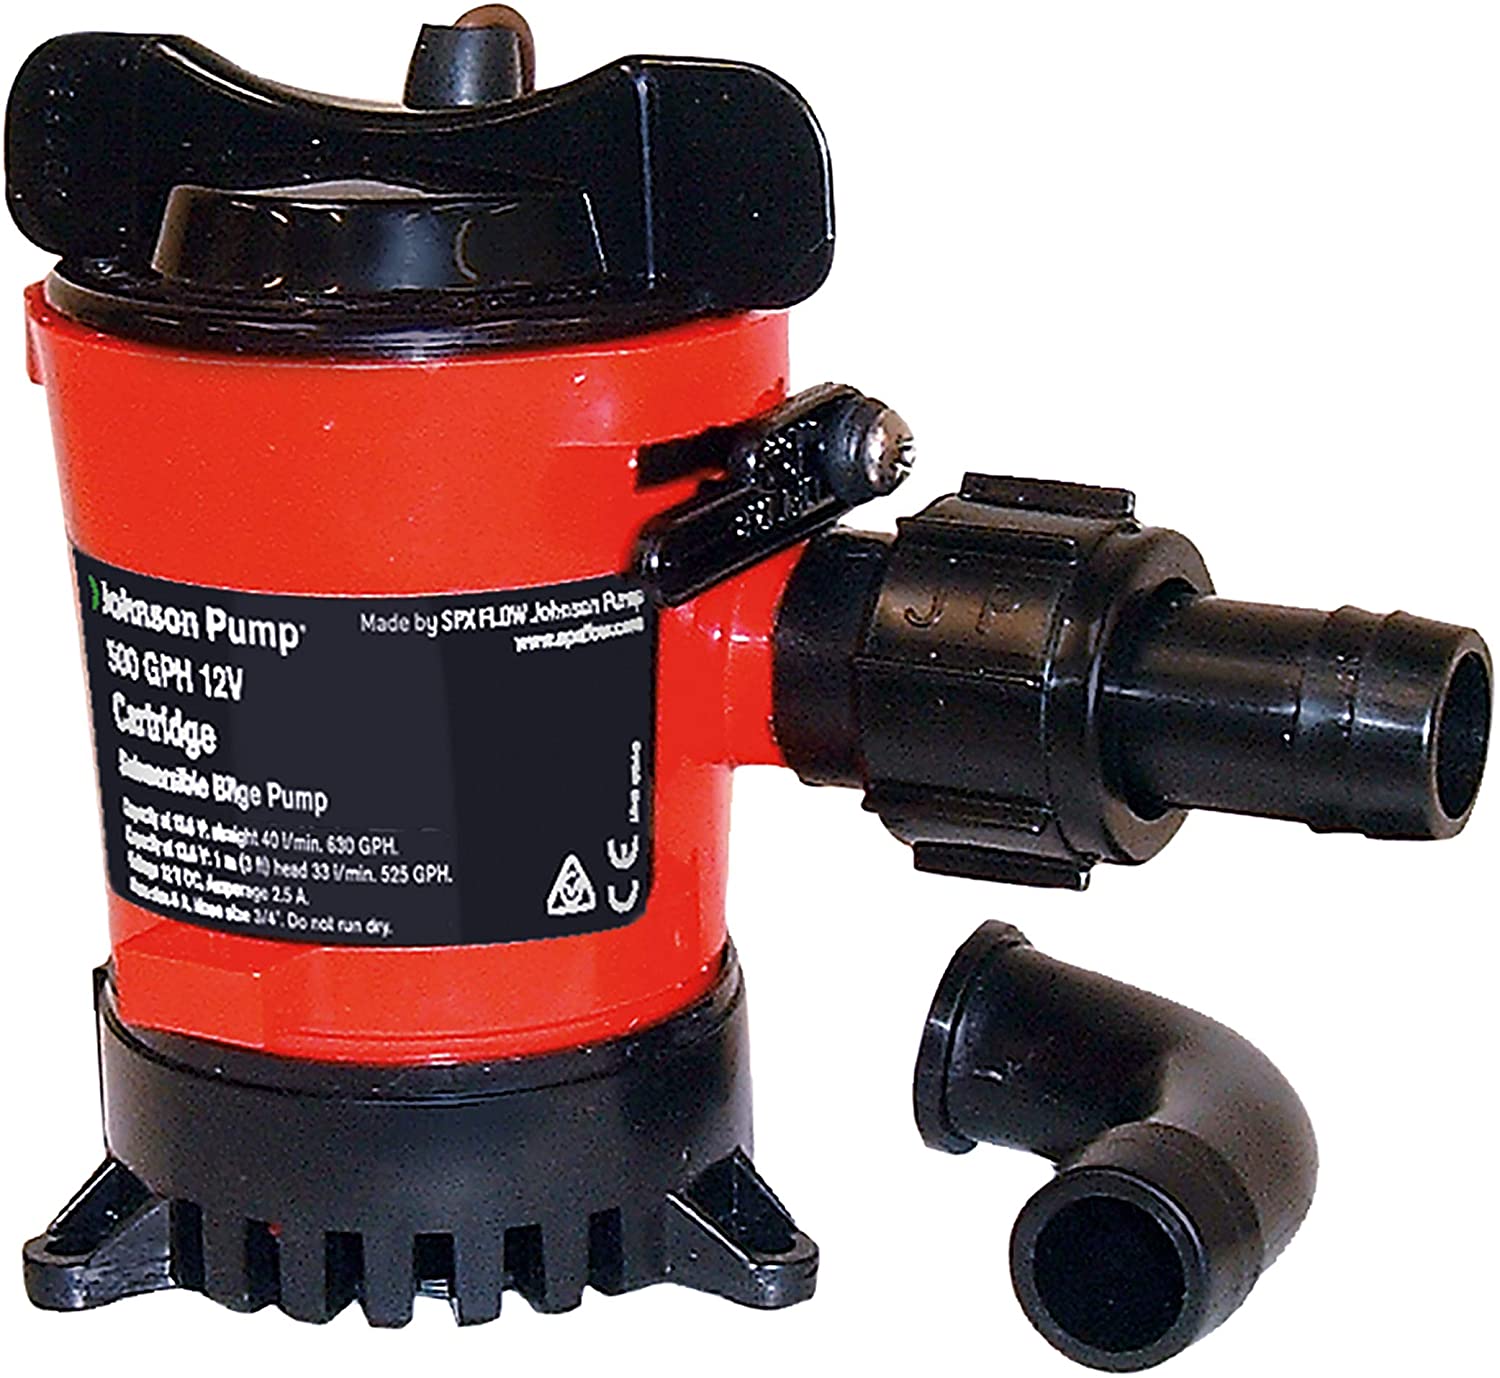 Johnson Pump - Cartridge Bilge Pumps, Part No. 42123 - Volt 12 DC - Outlet 3.5 - GPH 1250